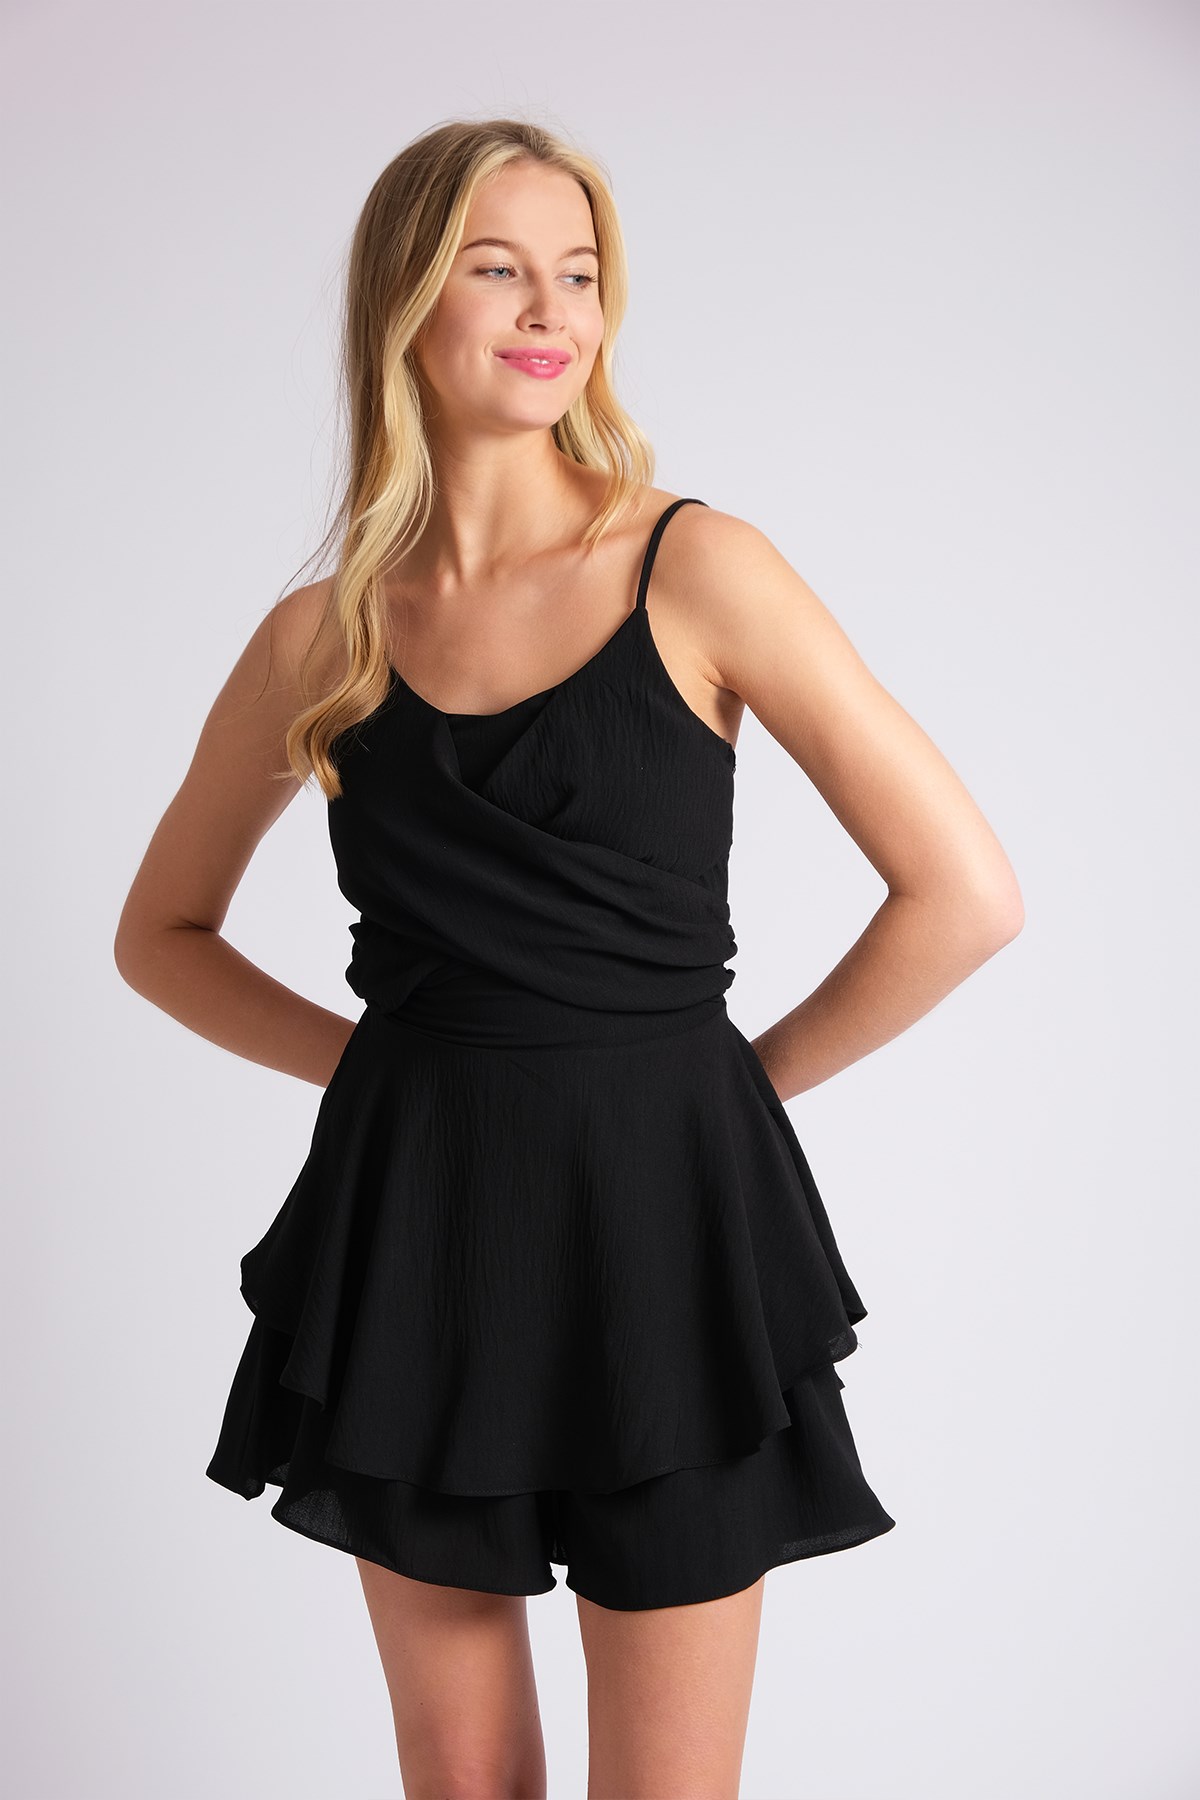 Mio Gusto Siyah Renk Askılı Kadın Şort Elbise Tulum